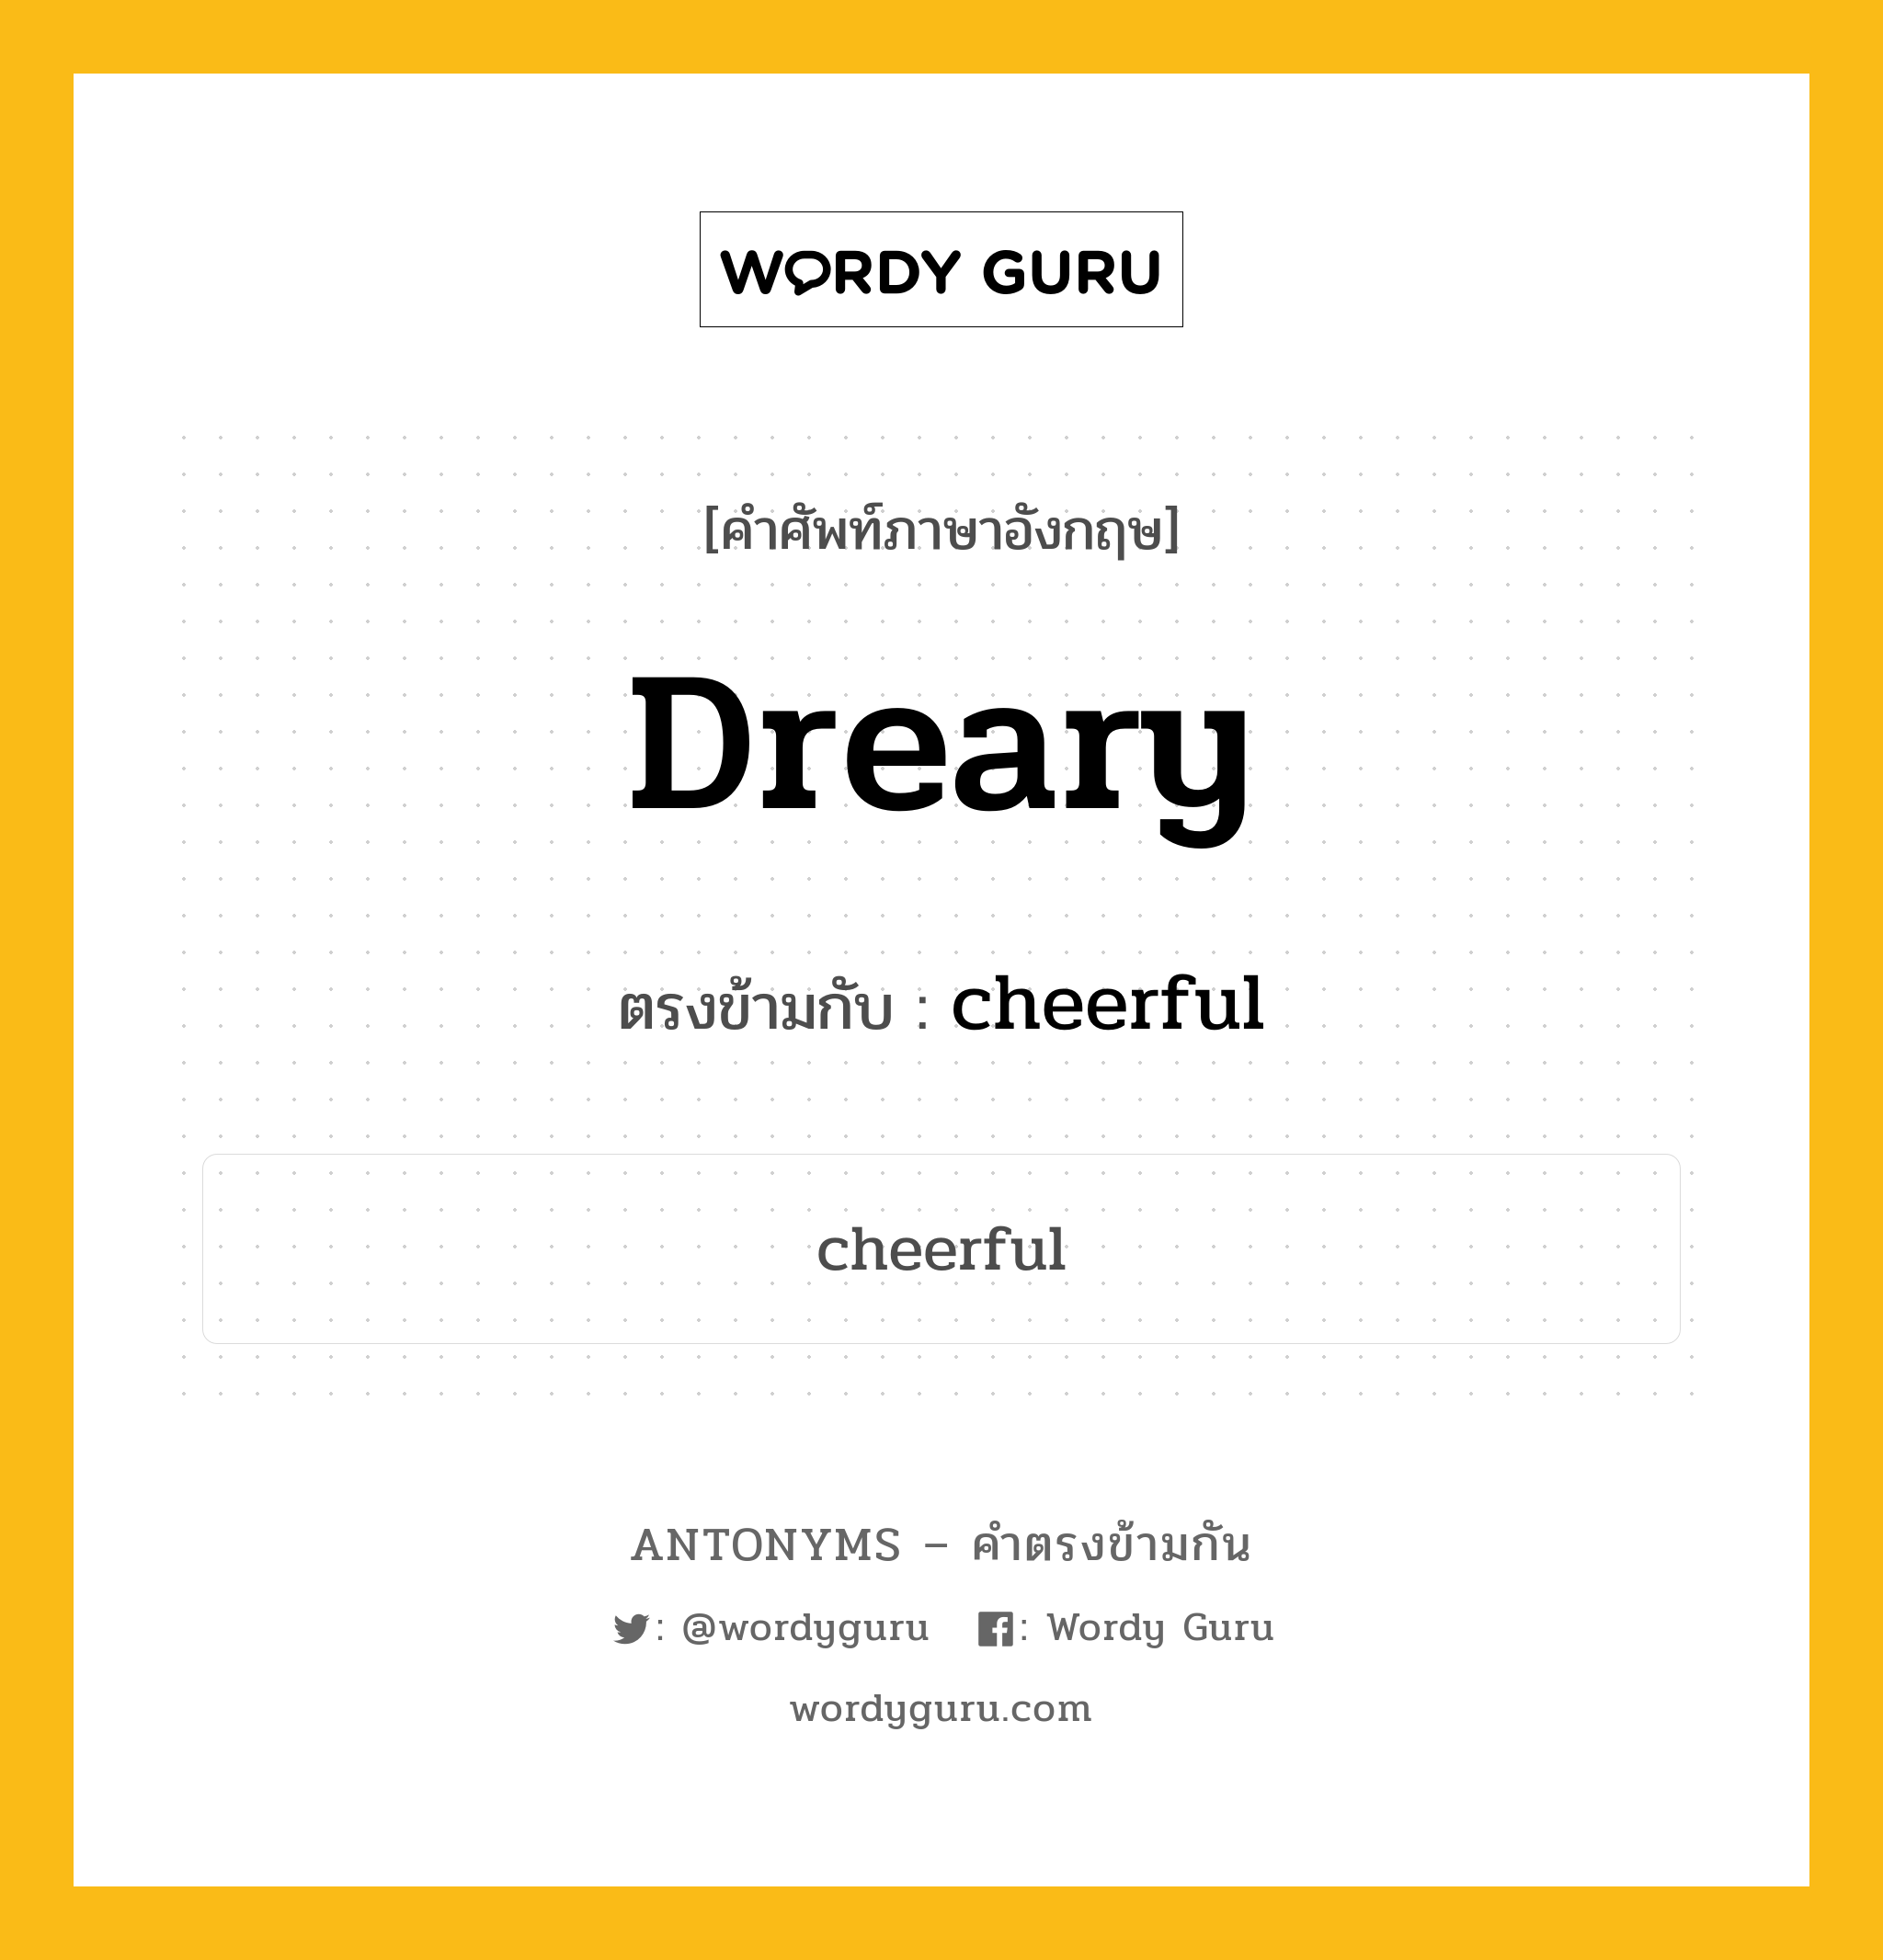 dreary เป็นคำตรงข้ามกับคำไหนบ้าง?, คำศัพท์ภาษาอังกฤษ dreary ตรงข้ามกับ cheerful หมวด cheerful